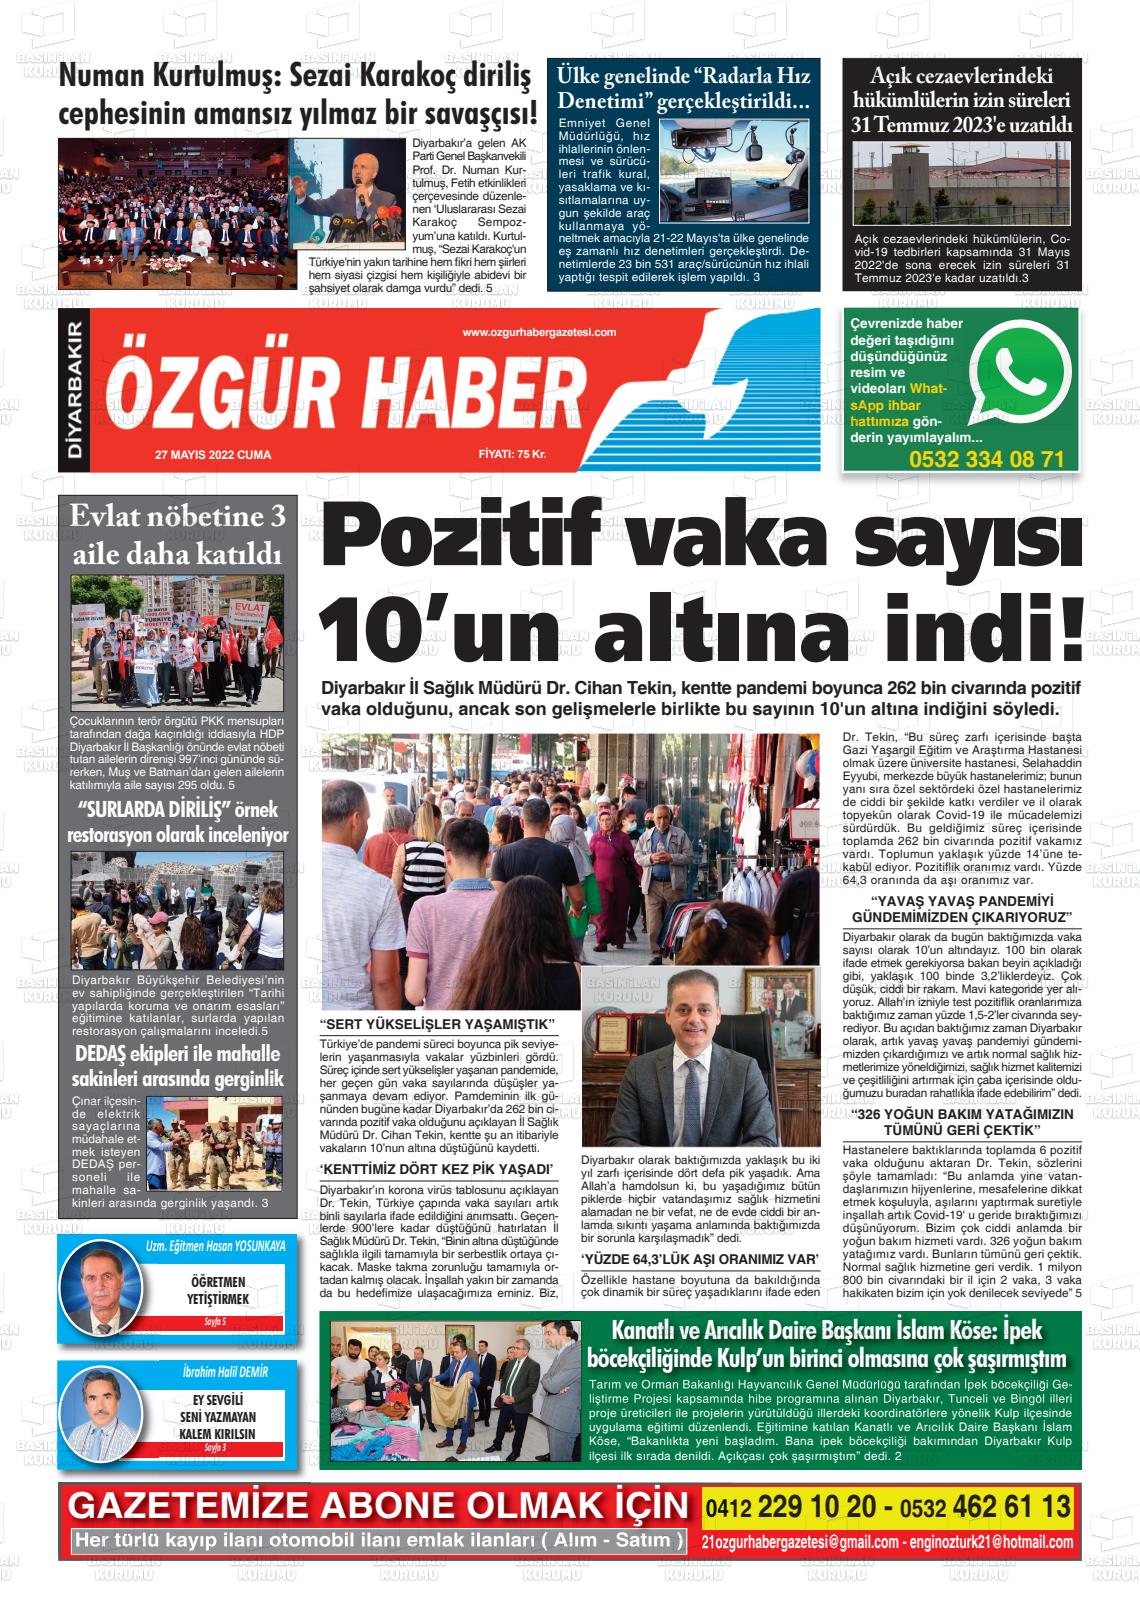 27 Mayıs 2022 Özgür Haber Gazete Manşeti